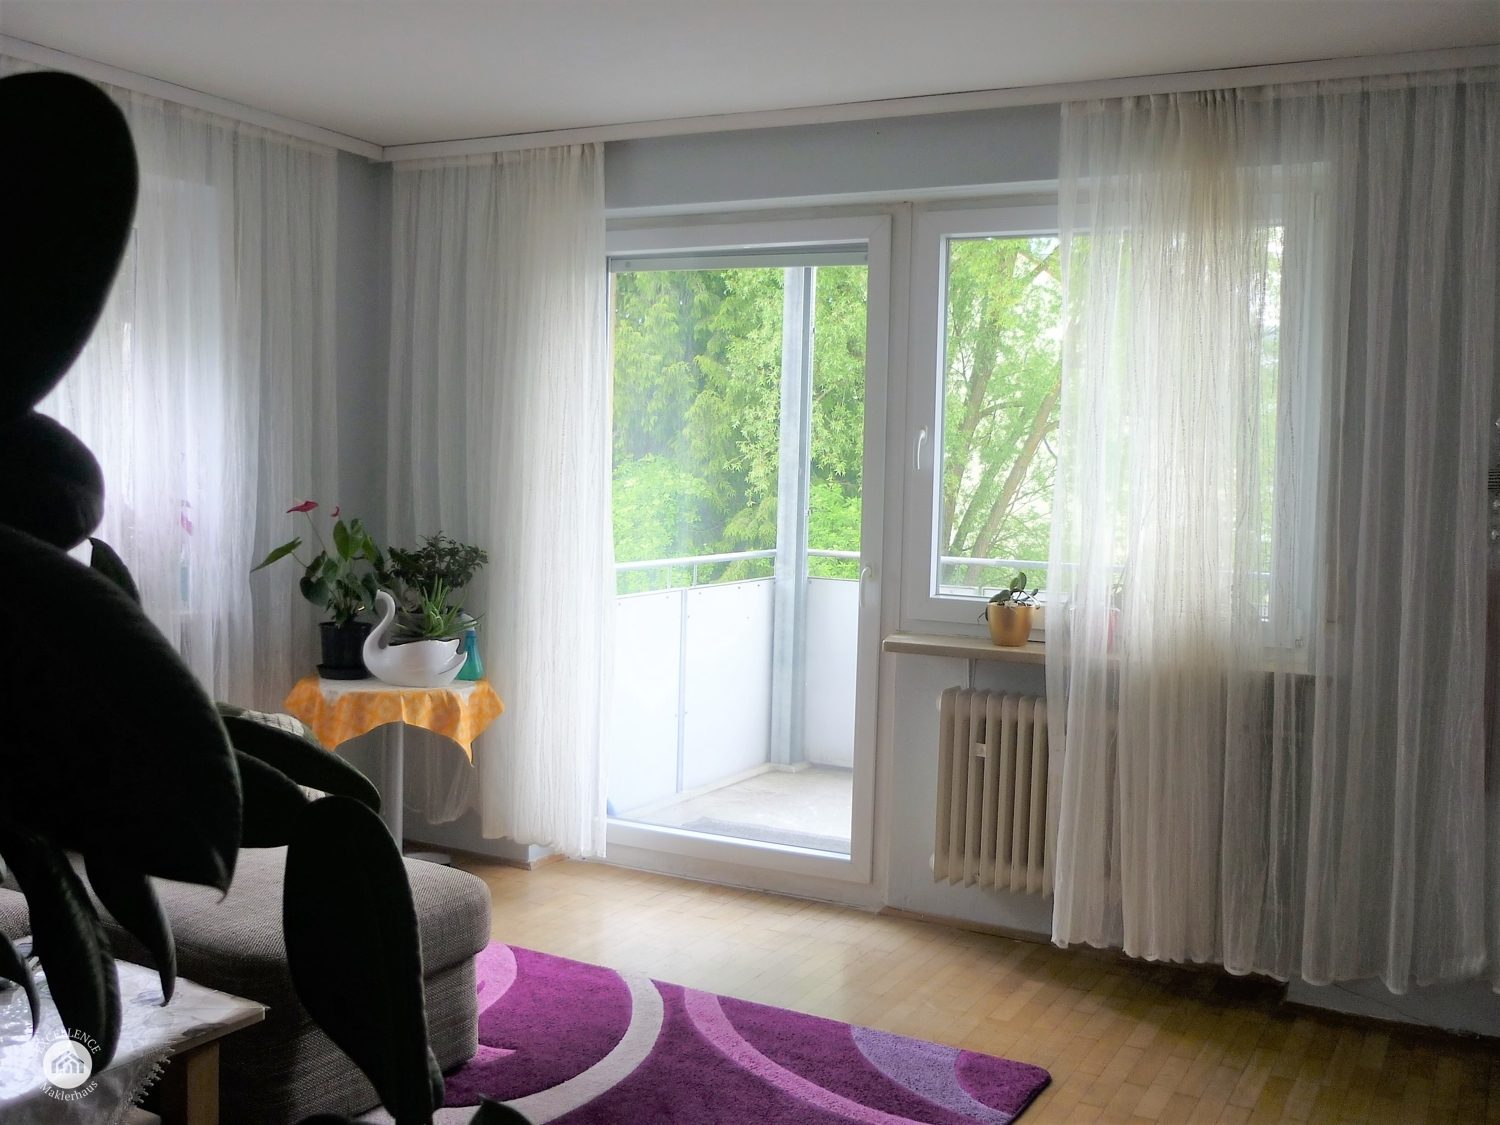 Immobilienangebot - Augsburg / Oberhausen - Alle - Großzügige 3 Zimmer Wohnung nahe den Wertach-Auen sucht Investor mit Weitblick oder zum Eigenbezug